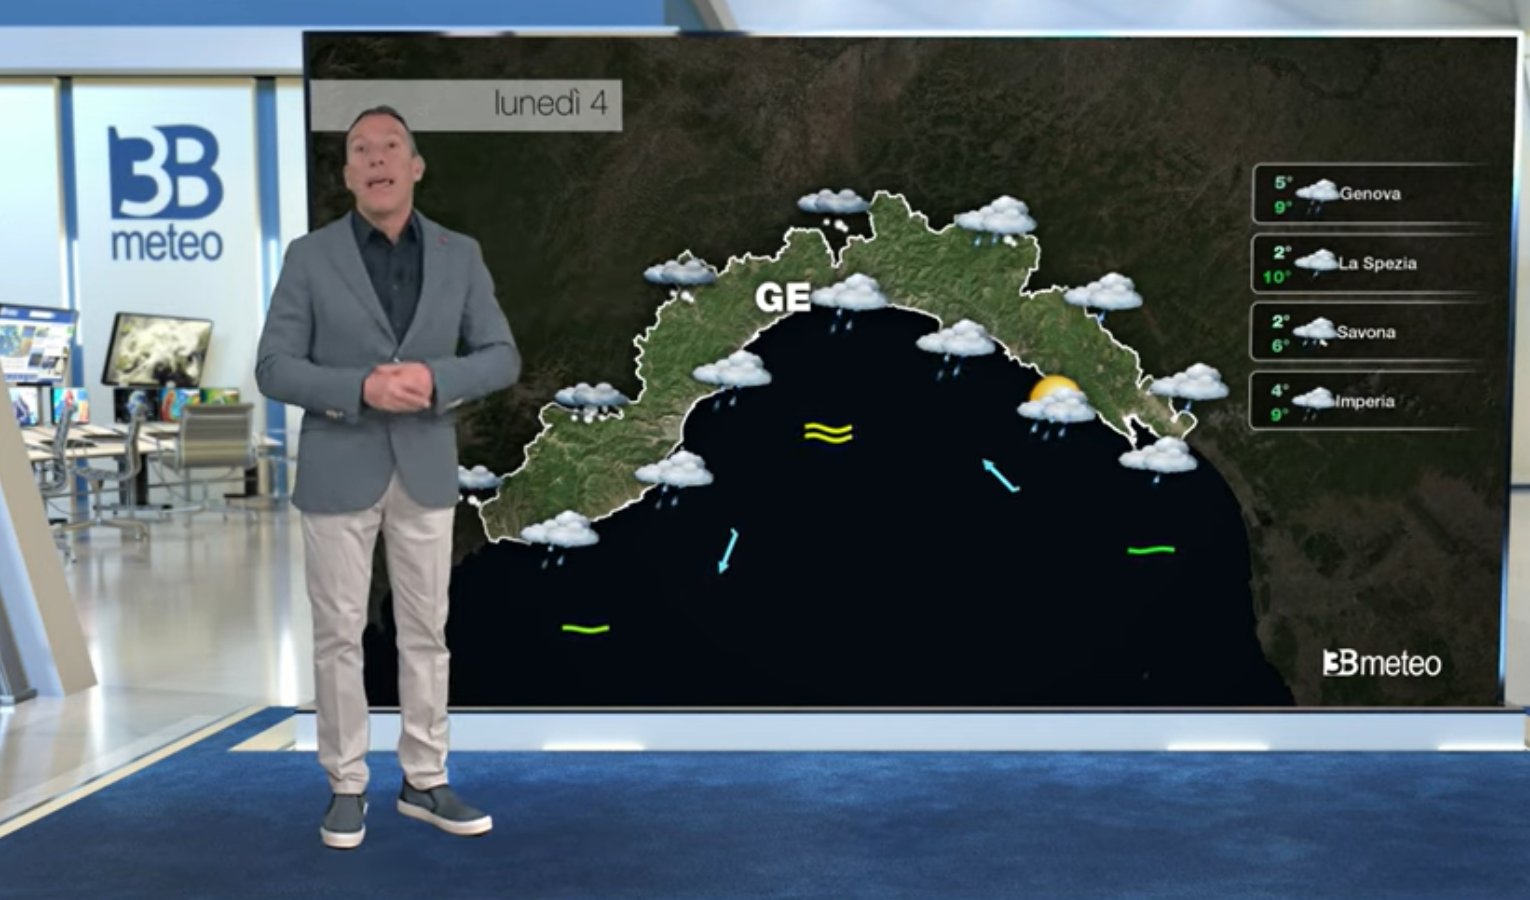 Meteo in Liguria, ecco le previsioni del tempo